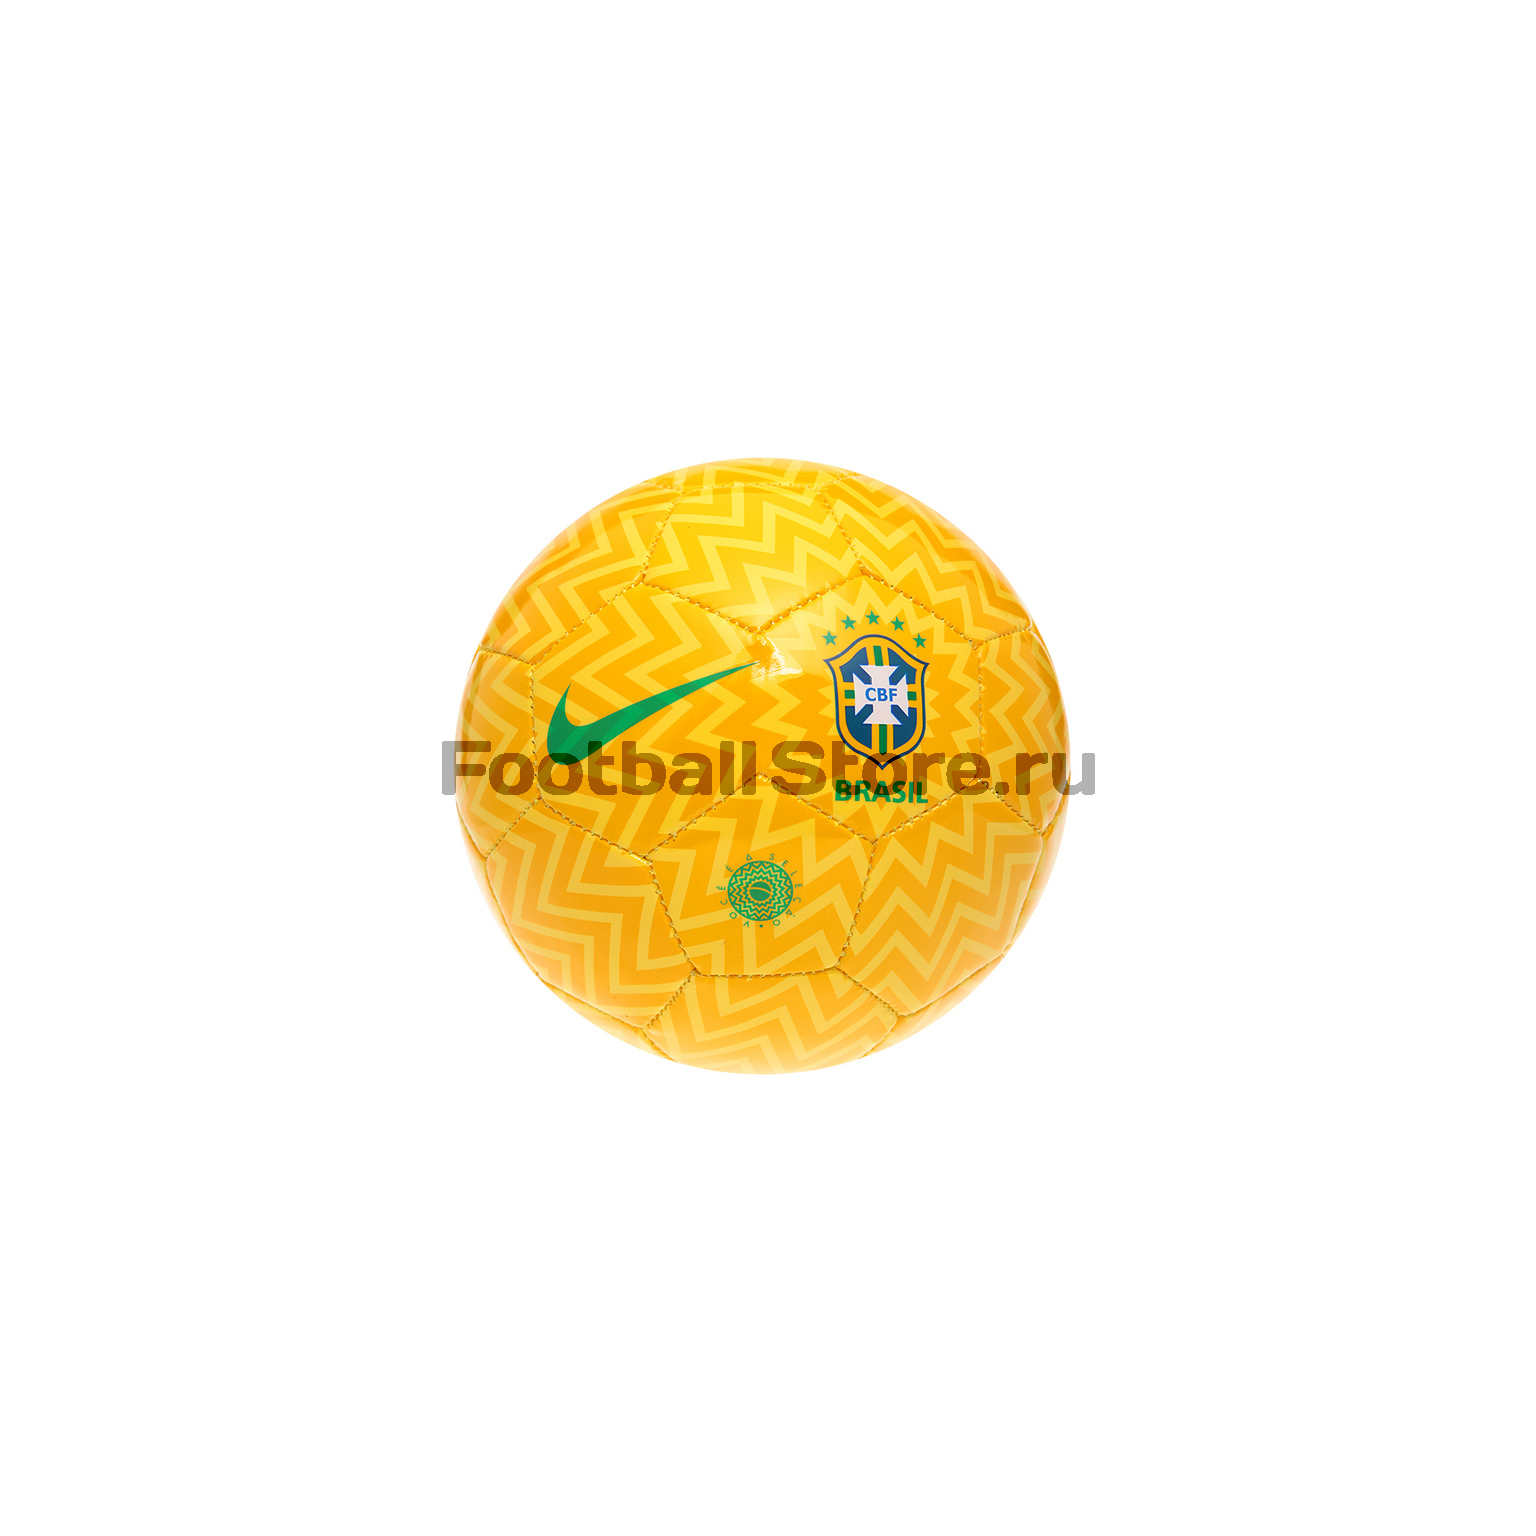 Футбольный мяч сувенирный Nike сб. Бразилии SC3227-750